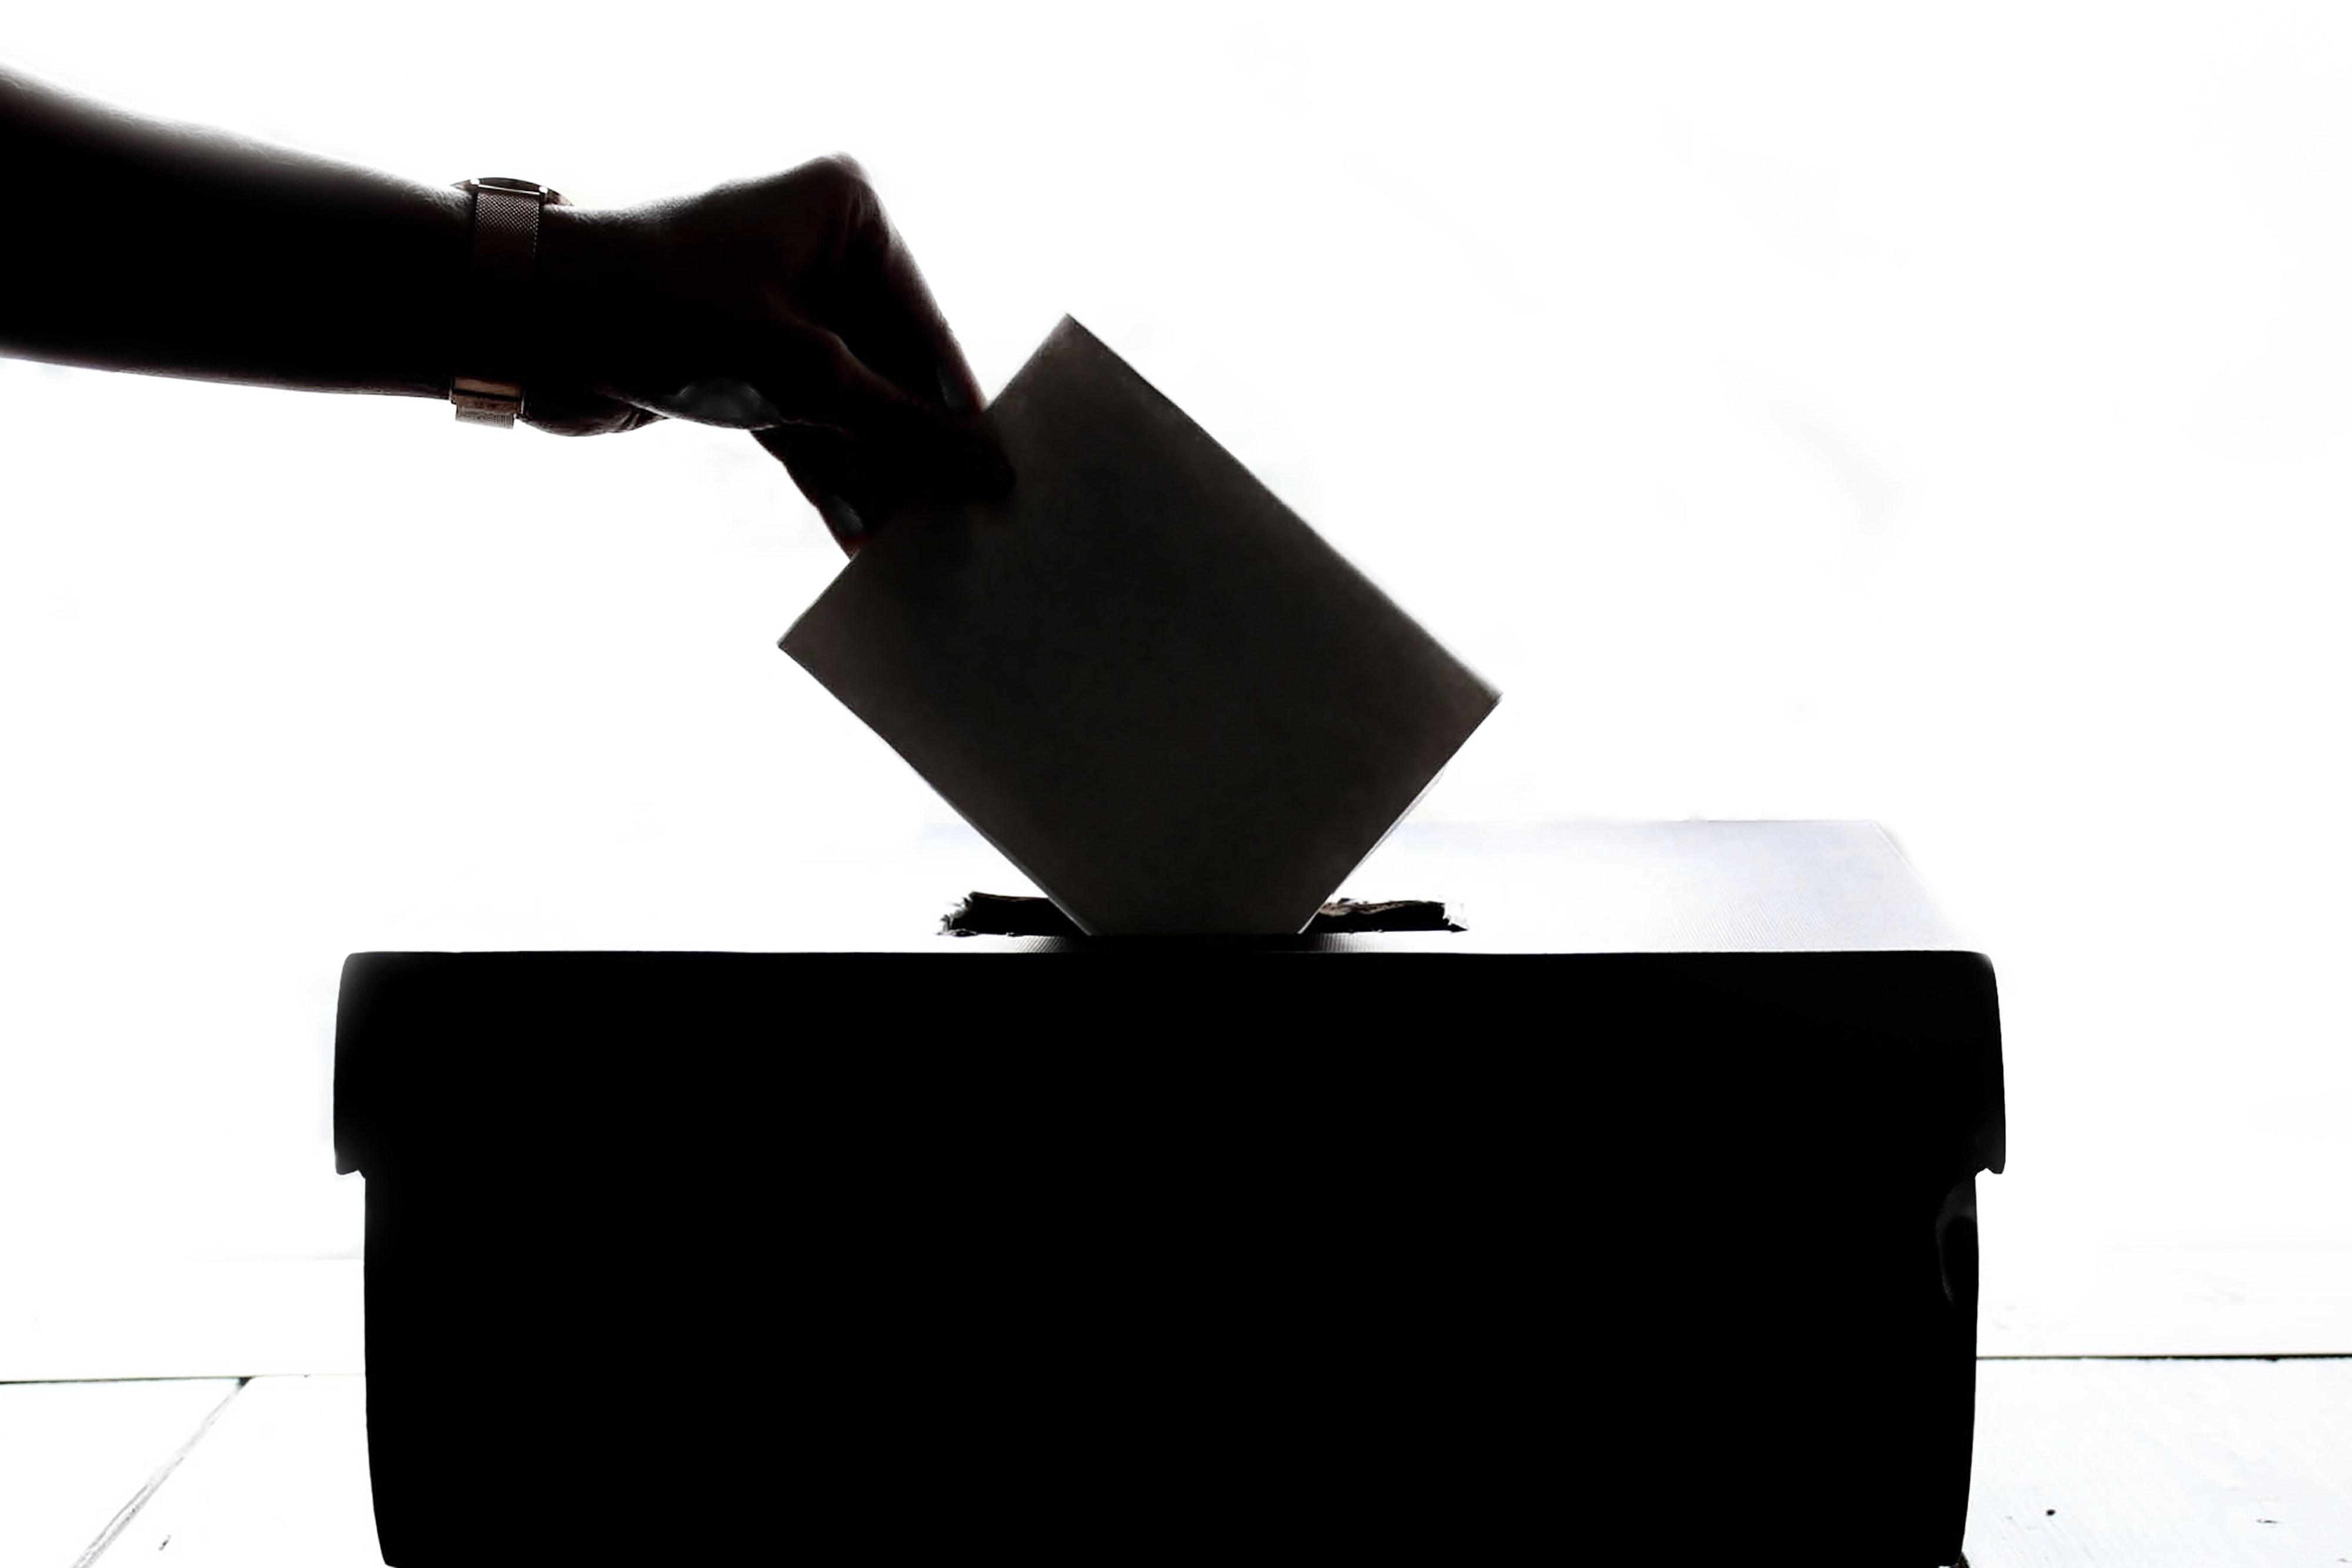 Imagen de recurso de una persona votando